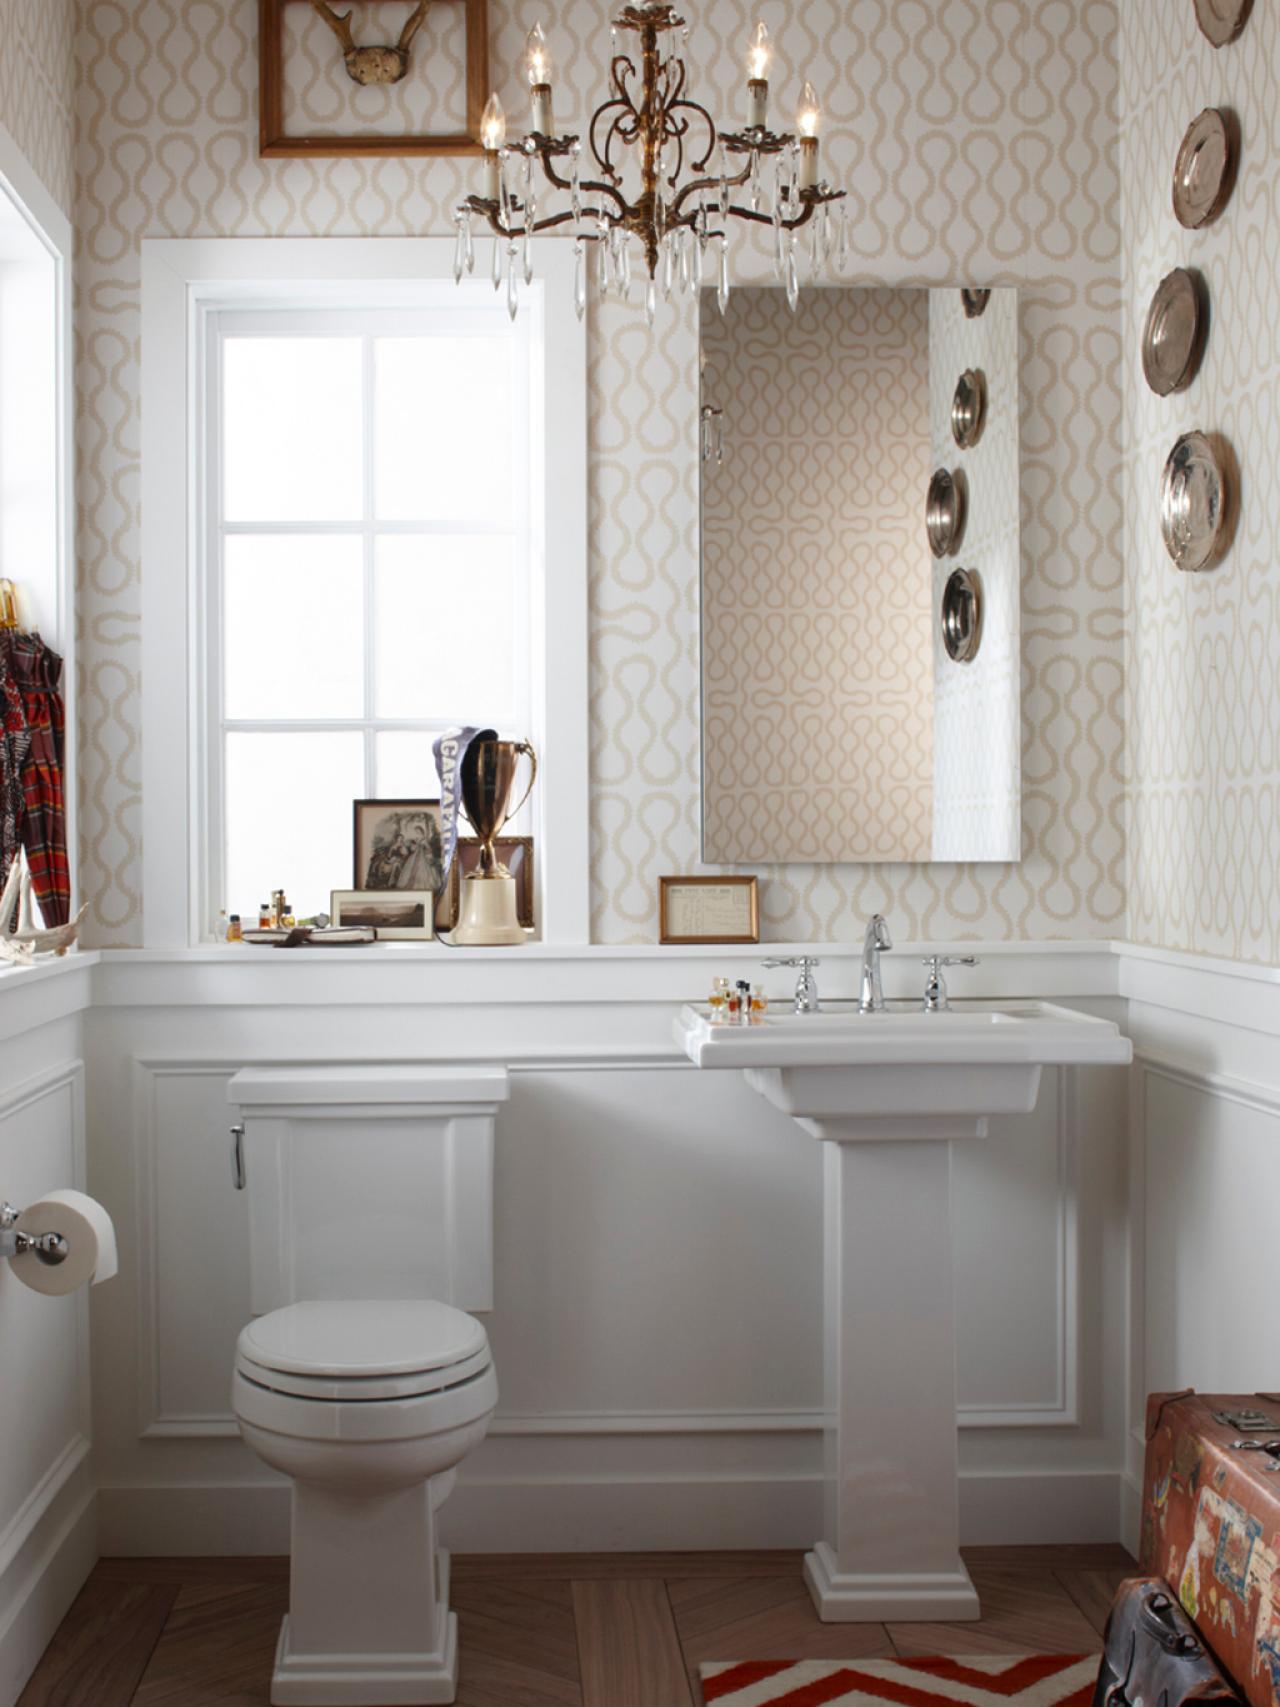 bathroom wallpaper designs,bathroom,room,interior design,property,tile